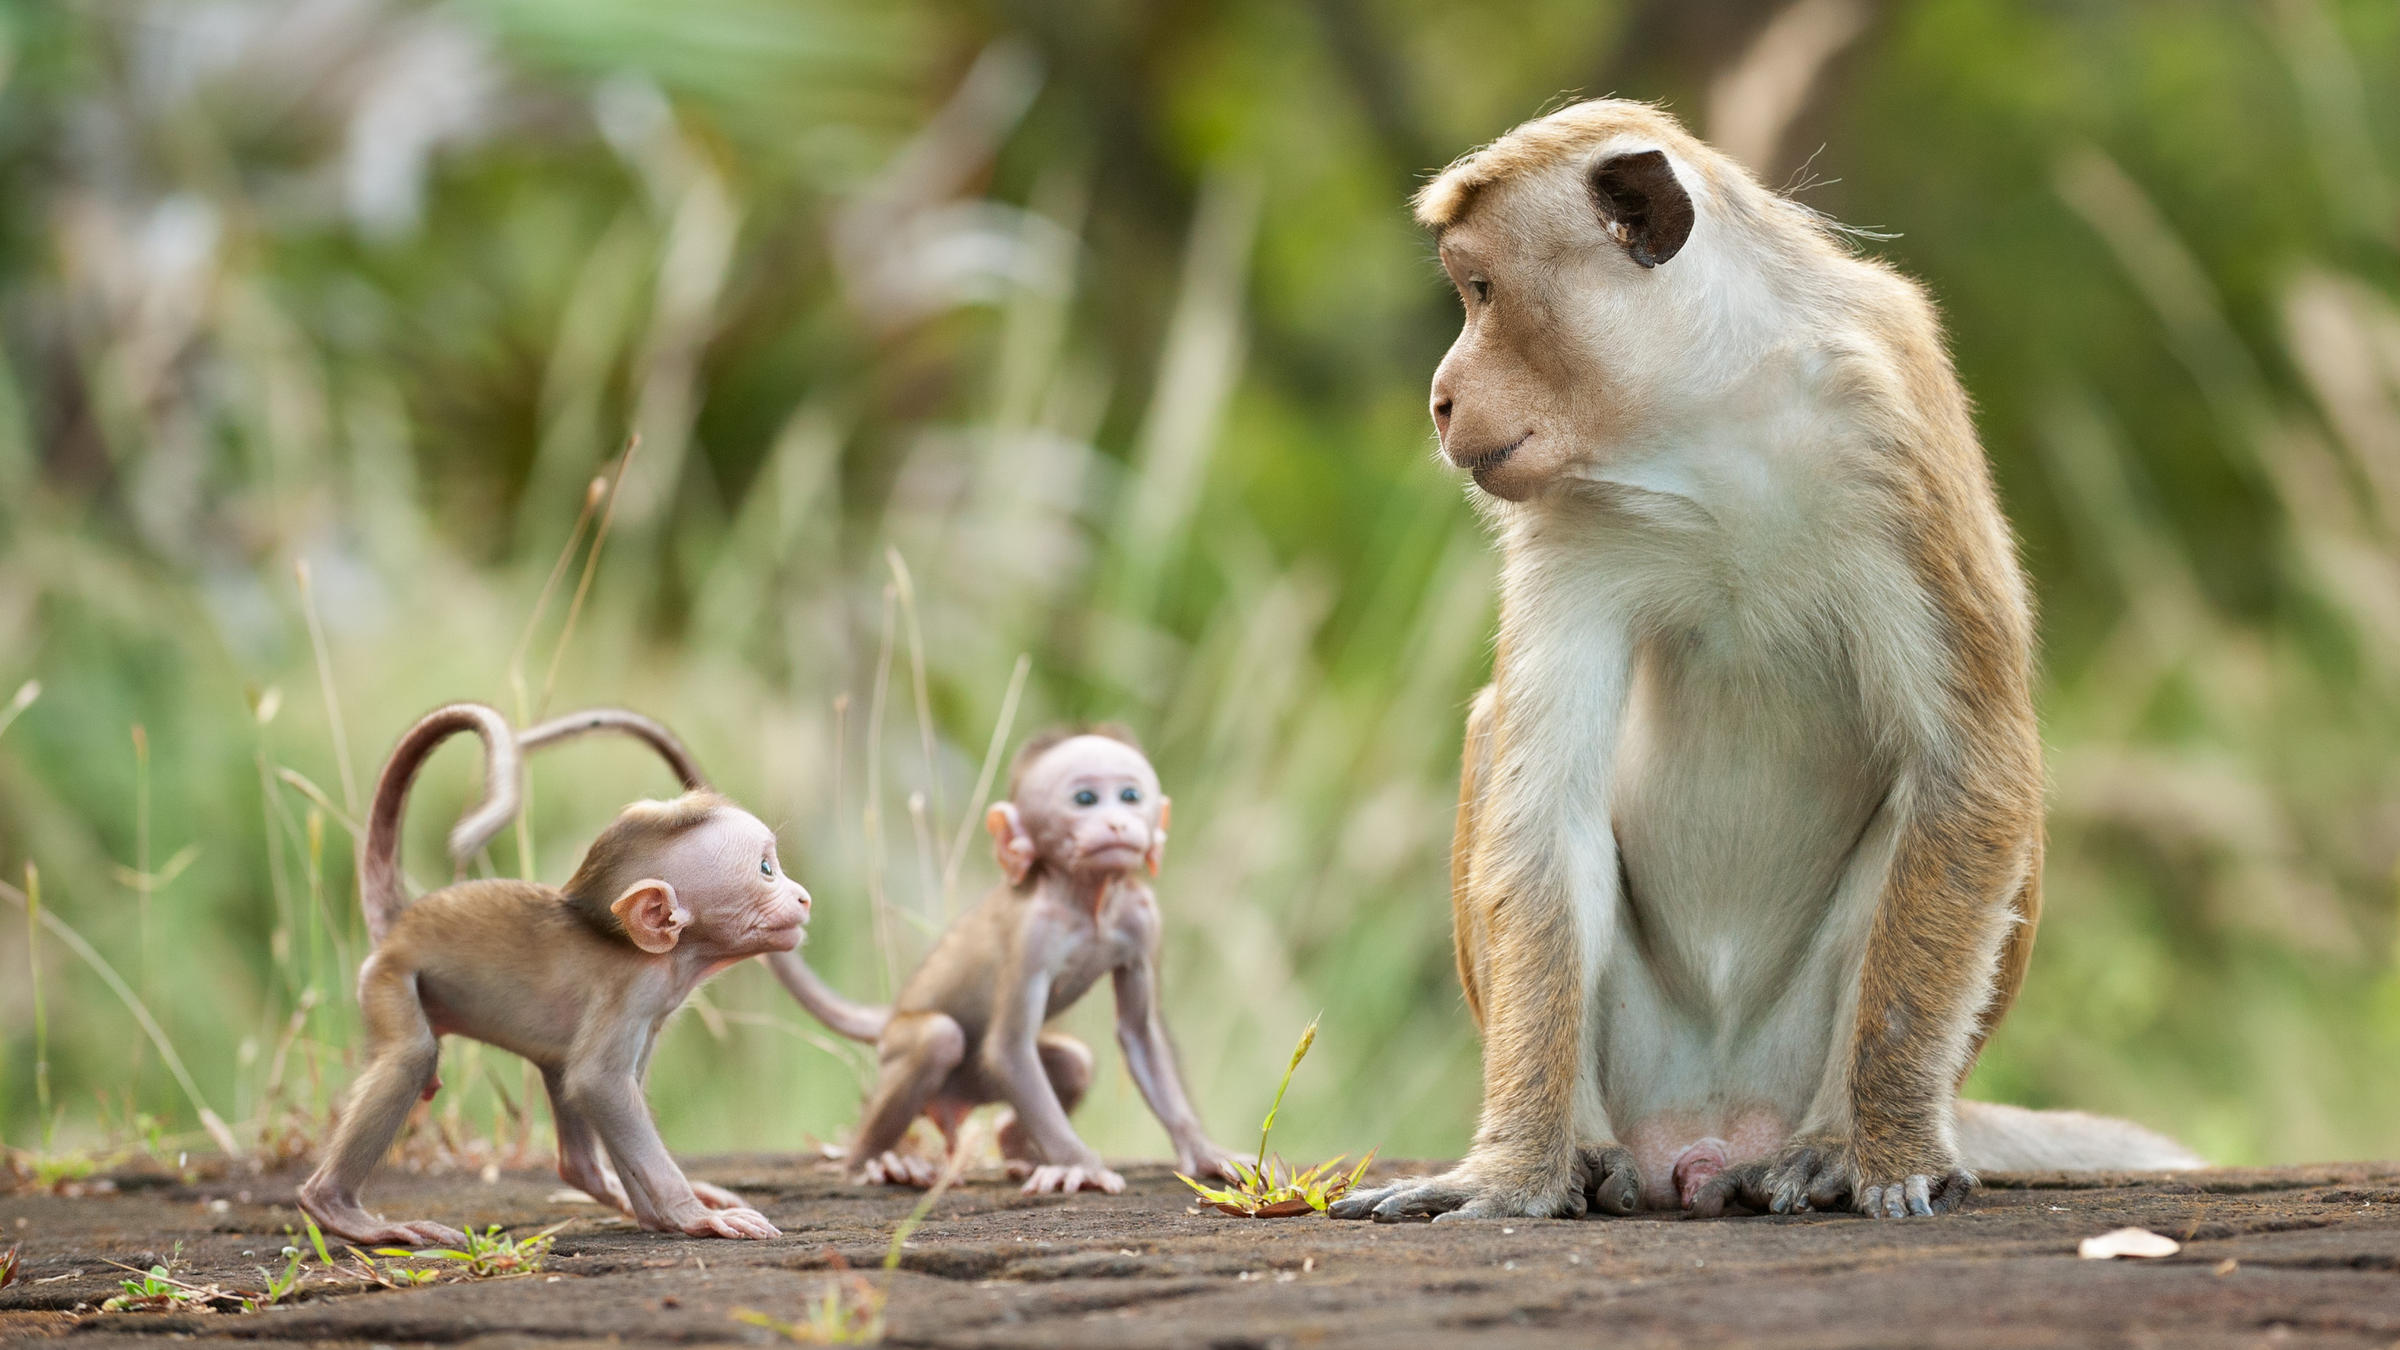 Hình ảnh con khỉ đẹp lộng lẫy và thu hút mọi ánh nhìn đang chờ đón bạn. Hãy thưởng thức những khoảnh khắc tuyệt vời của chúng, từ những đường cong quyến rũ, sự mạnh mẽ đến những cử chỉ ngộ nghĩnh đáng yêu.